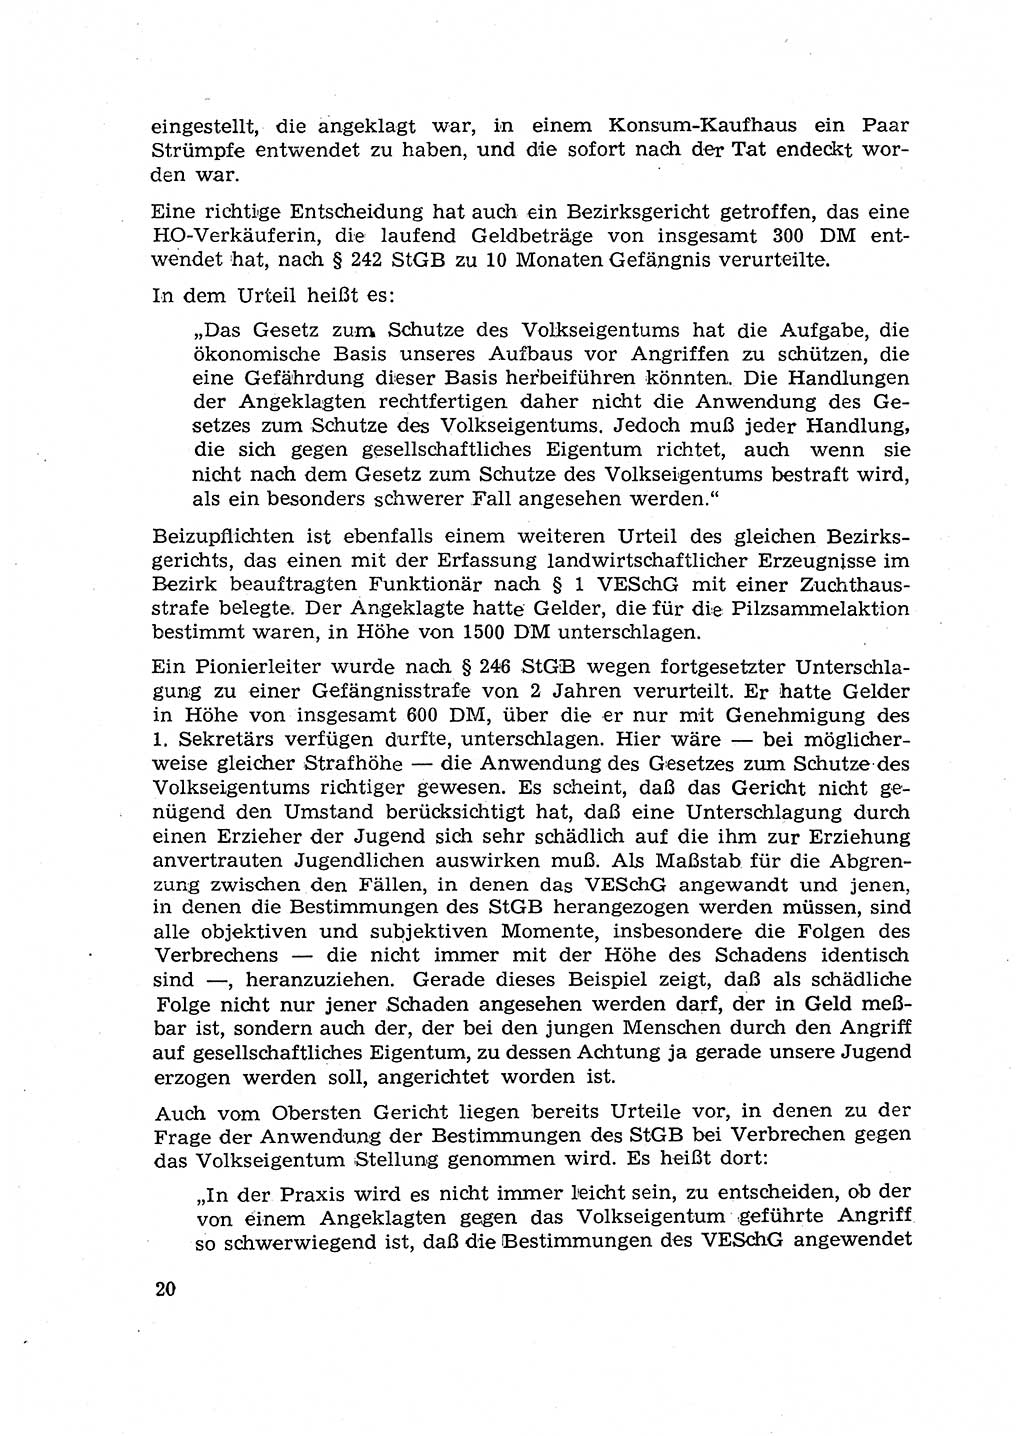 Hauptaufgaben der Justiz [Deutsche Demokratische Republik (DDR)] bei der Durchführung des neuen Kurses 1953, Seite 20 (Hpt.-Aufg. J. DDR 1953, S. 20)